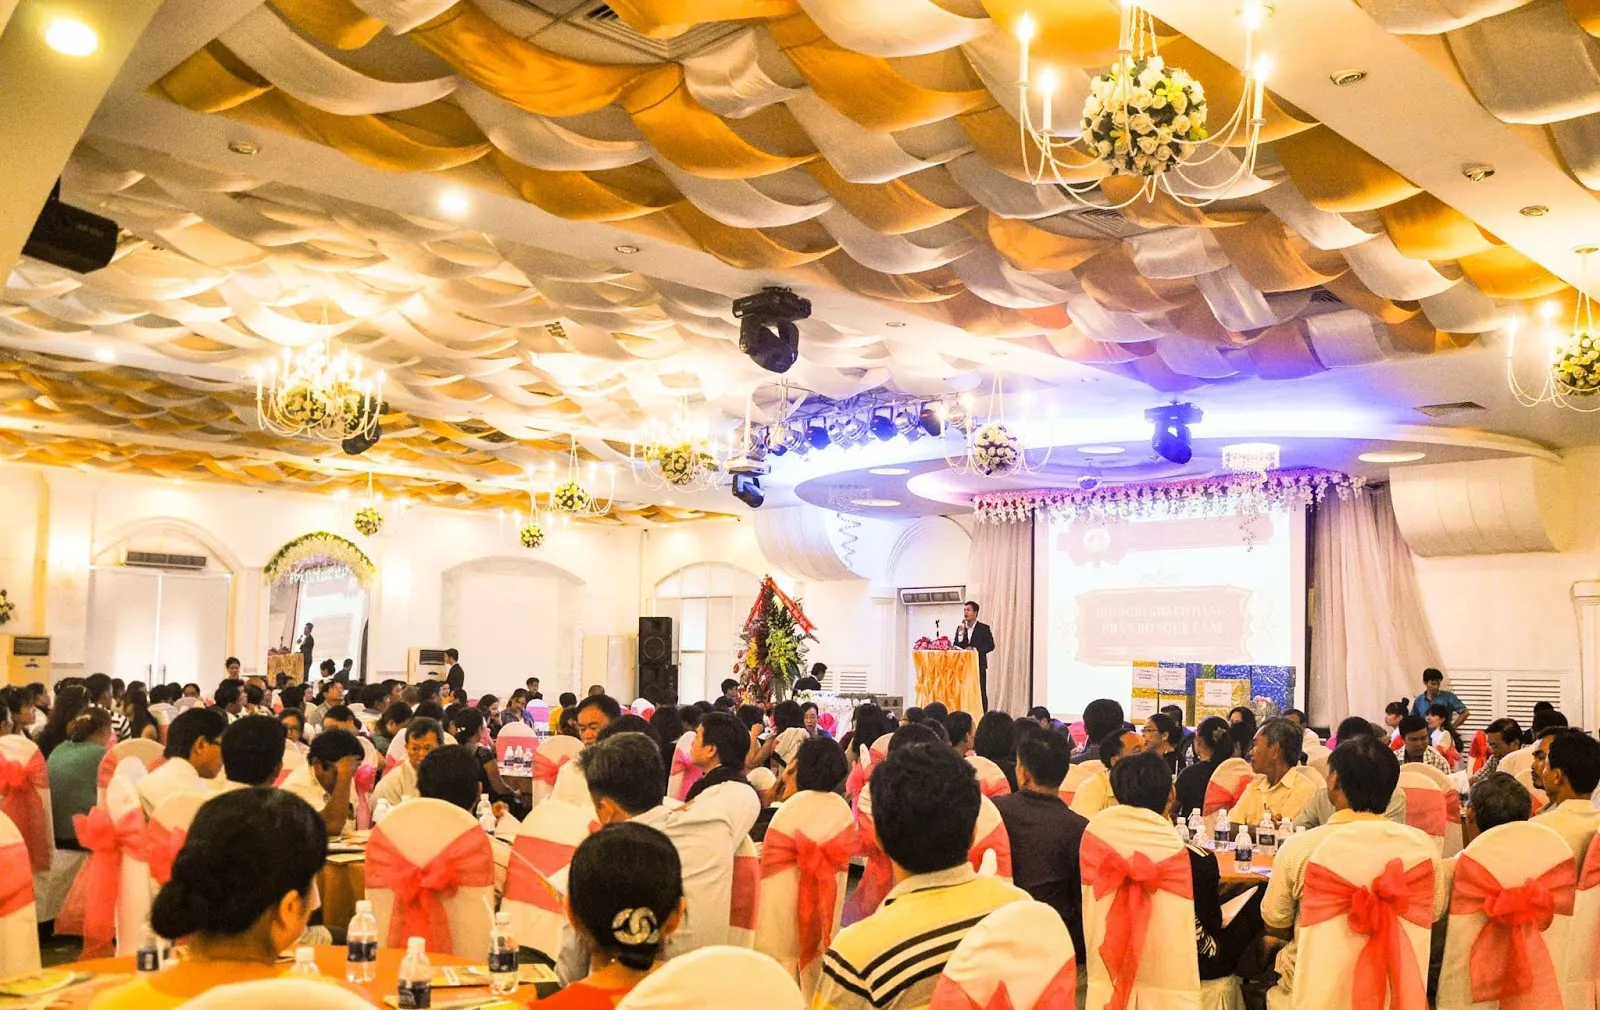 Tổ chức hội nghị tại Bắc Ninh